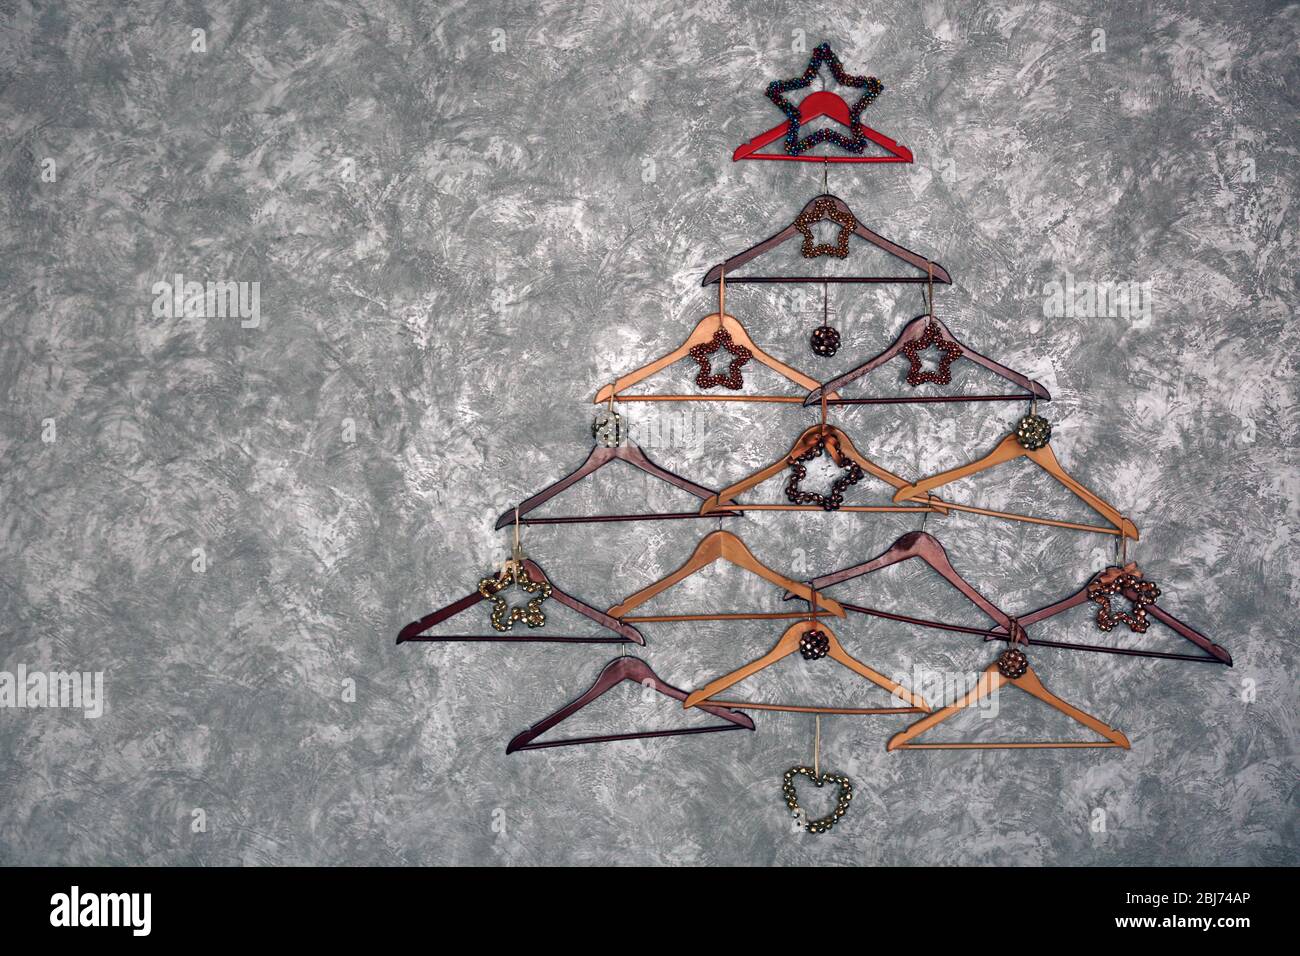 Weihnachtsbaum aus Kleiderbügeln an der Wand Stockfotografie - Alamy